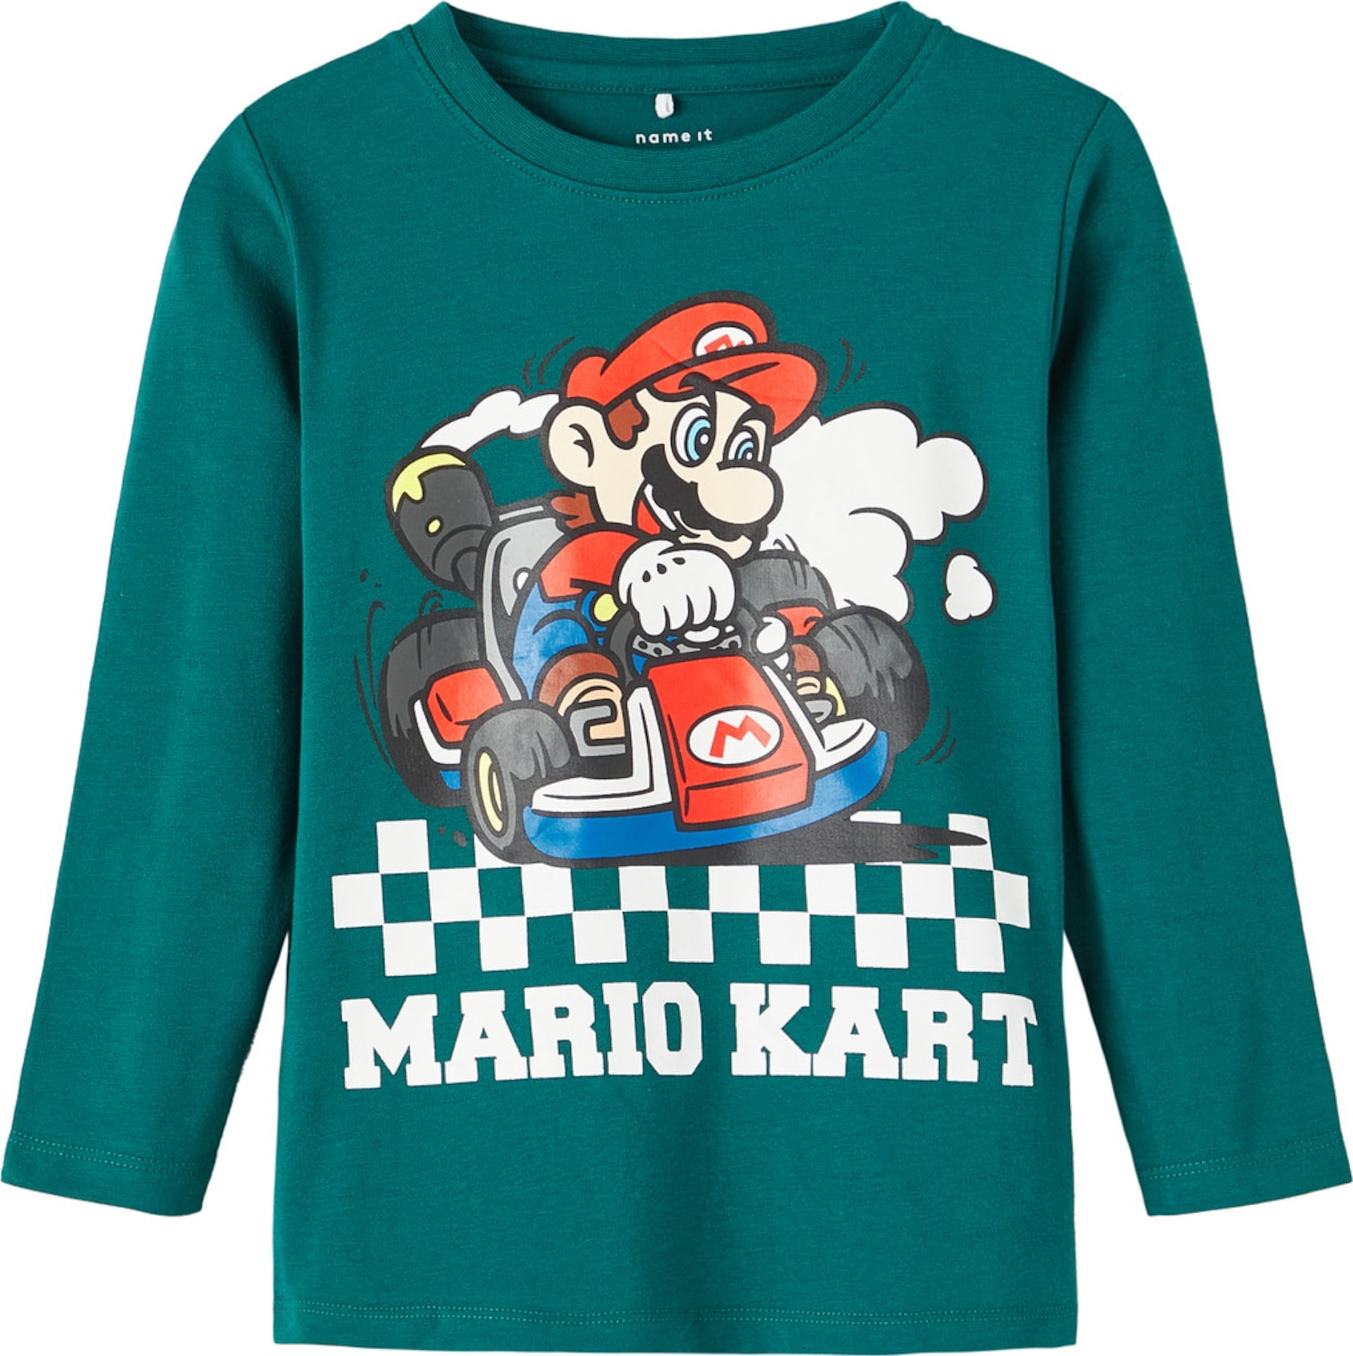 NAME IT Tričko 'Mario Kart' zelená / červená / bílá